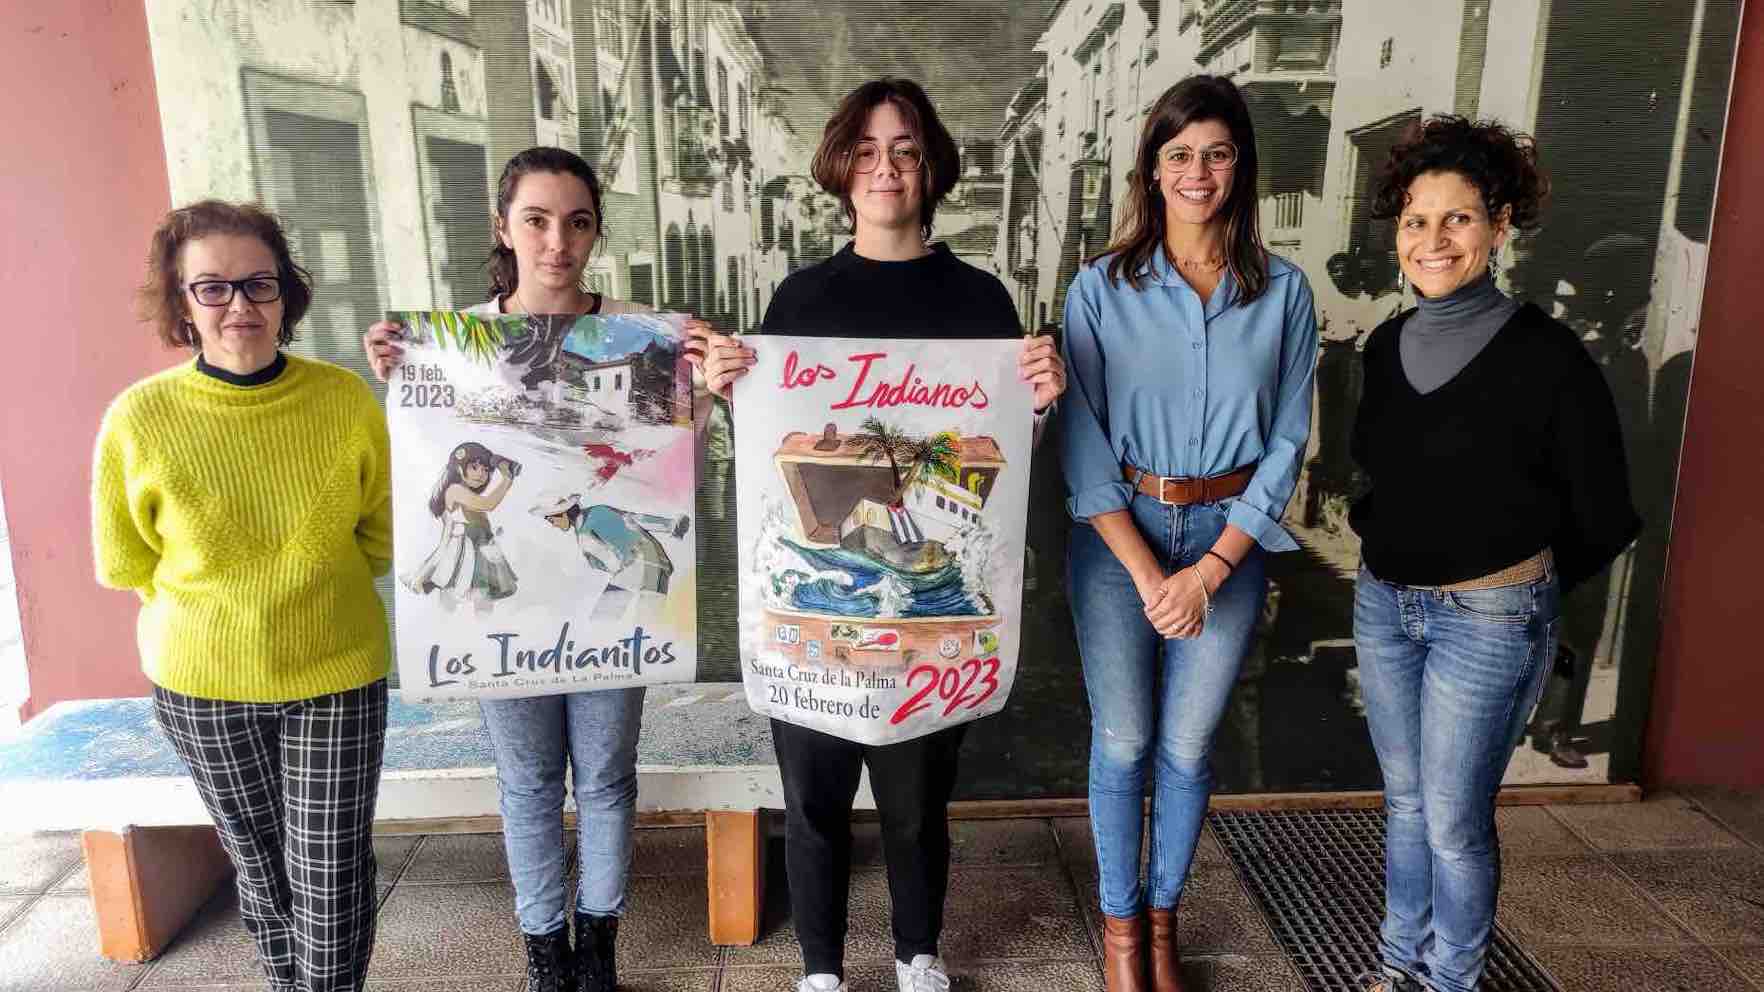 Santa Cruz de La Palma presenta los carteles anunciadores de Los Indianos e Indianitos  2023 